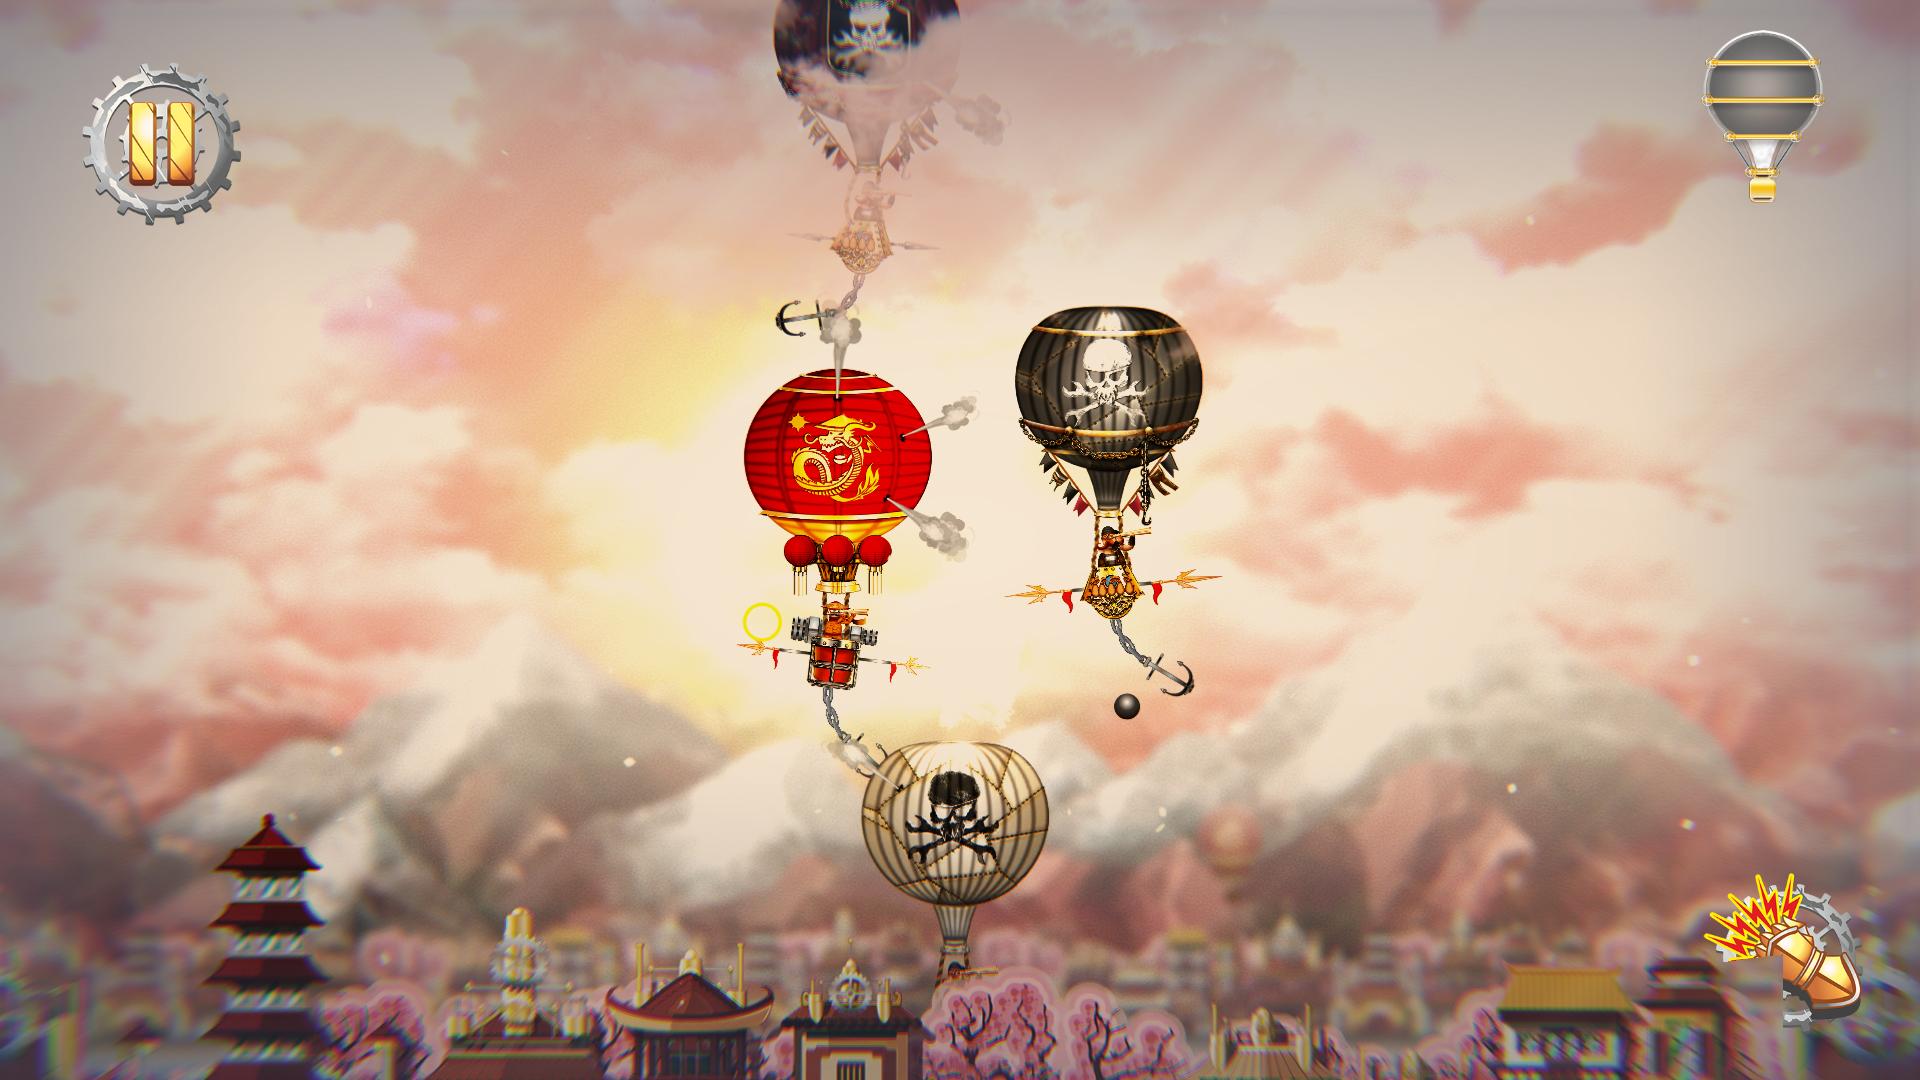 Screenshot №1 from game Pilam Sky